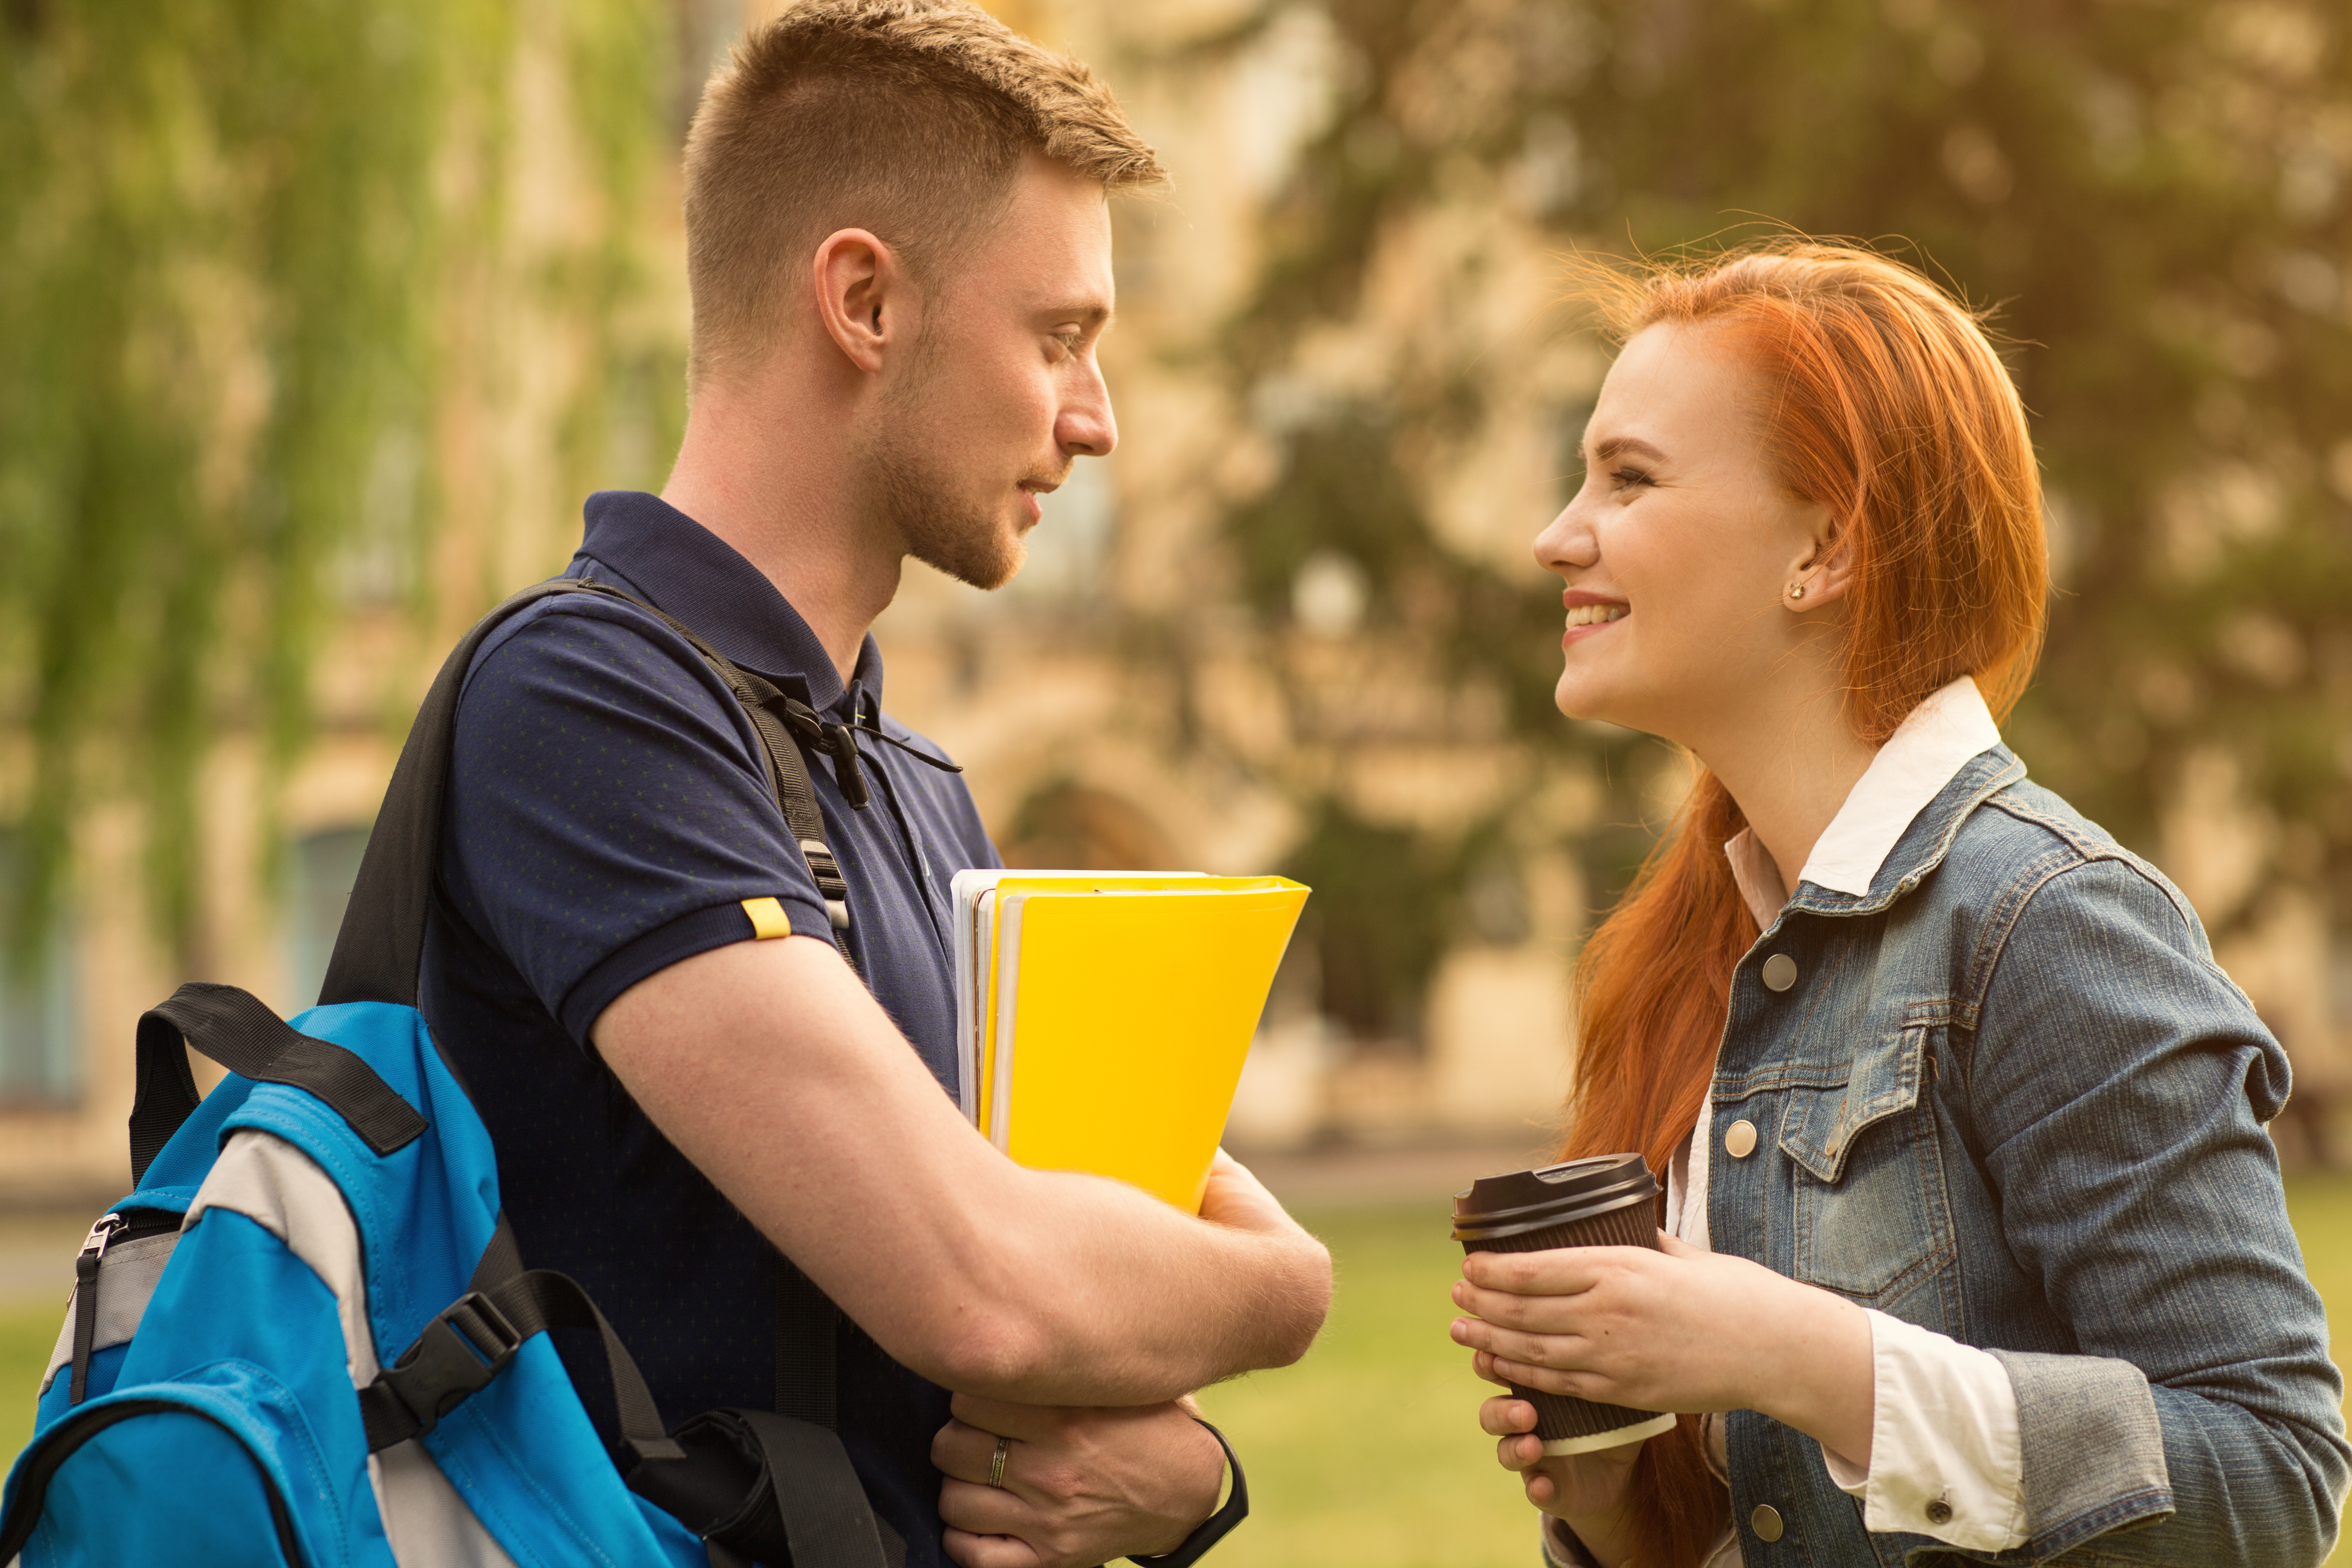 Deux étudiants se sourient l'un à l'autre | Source : Shutterstock